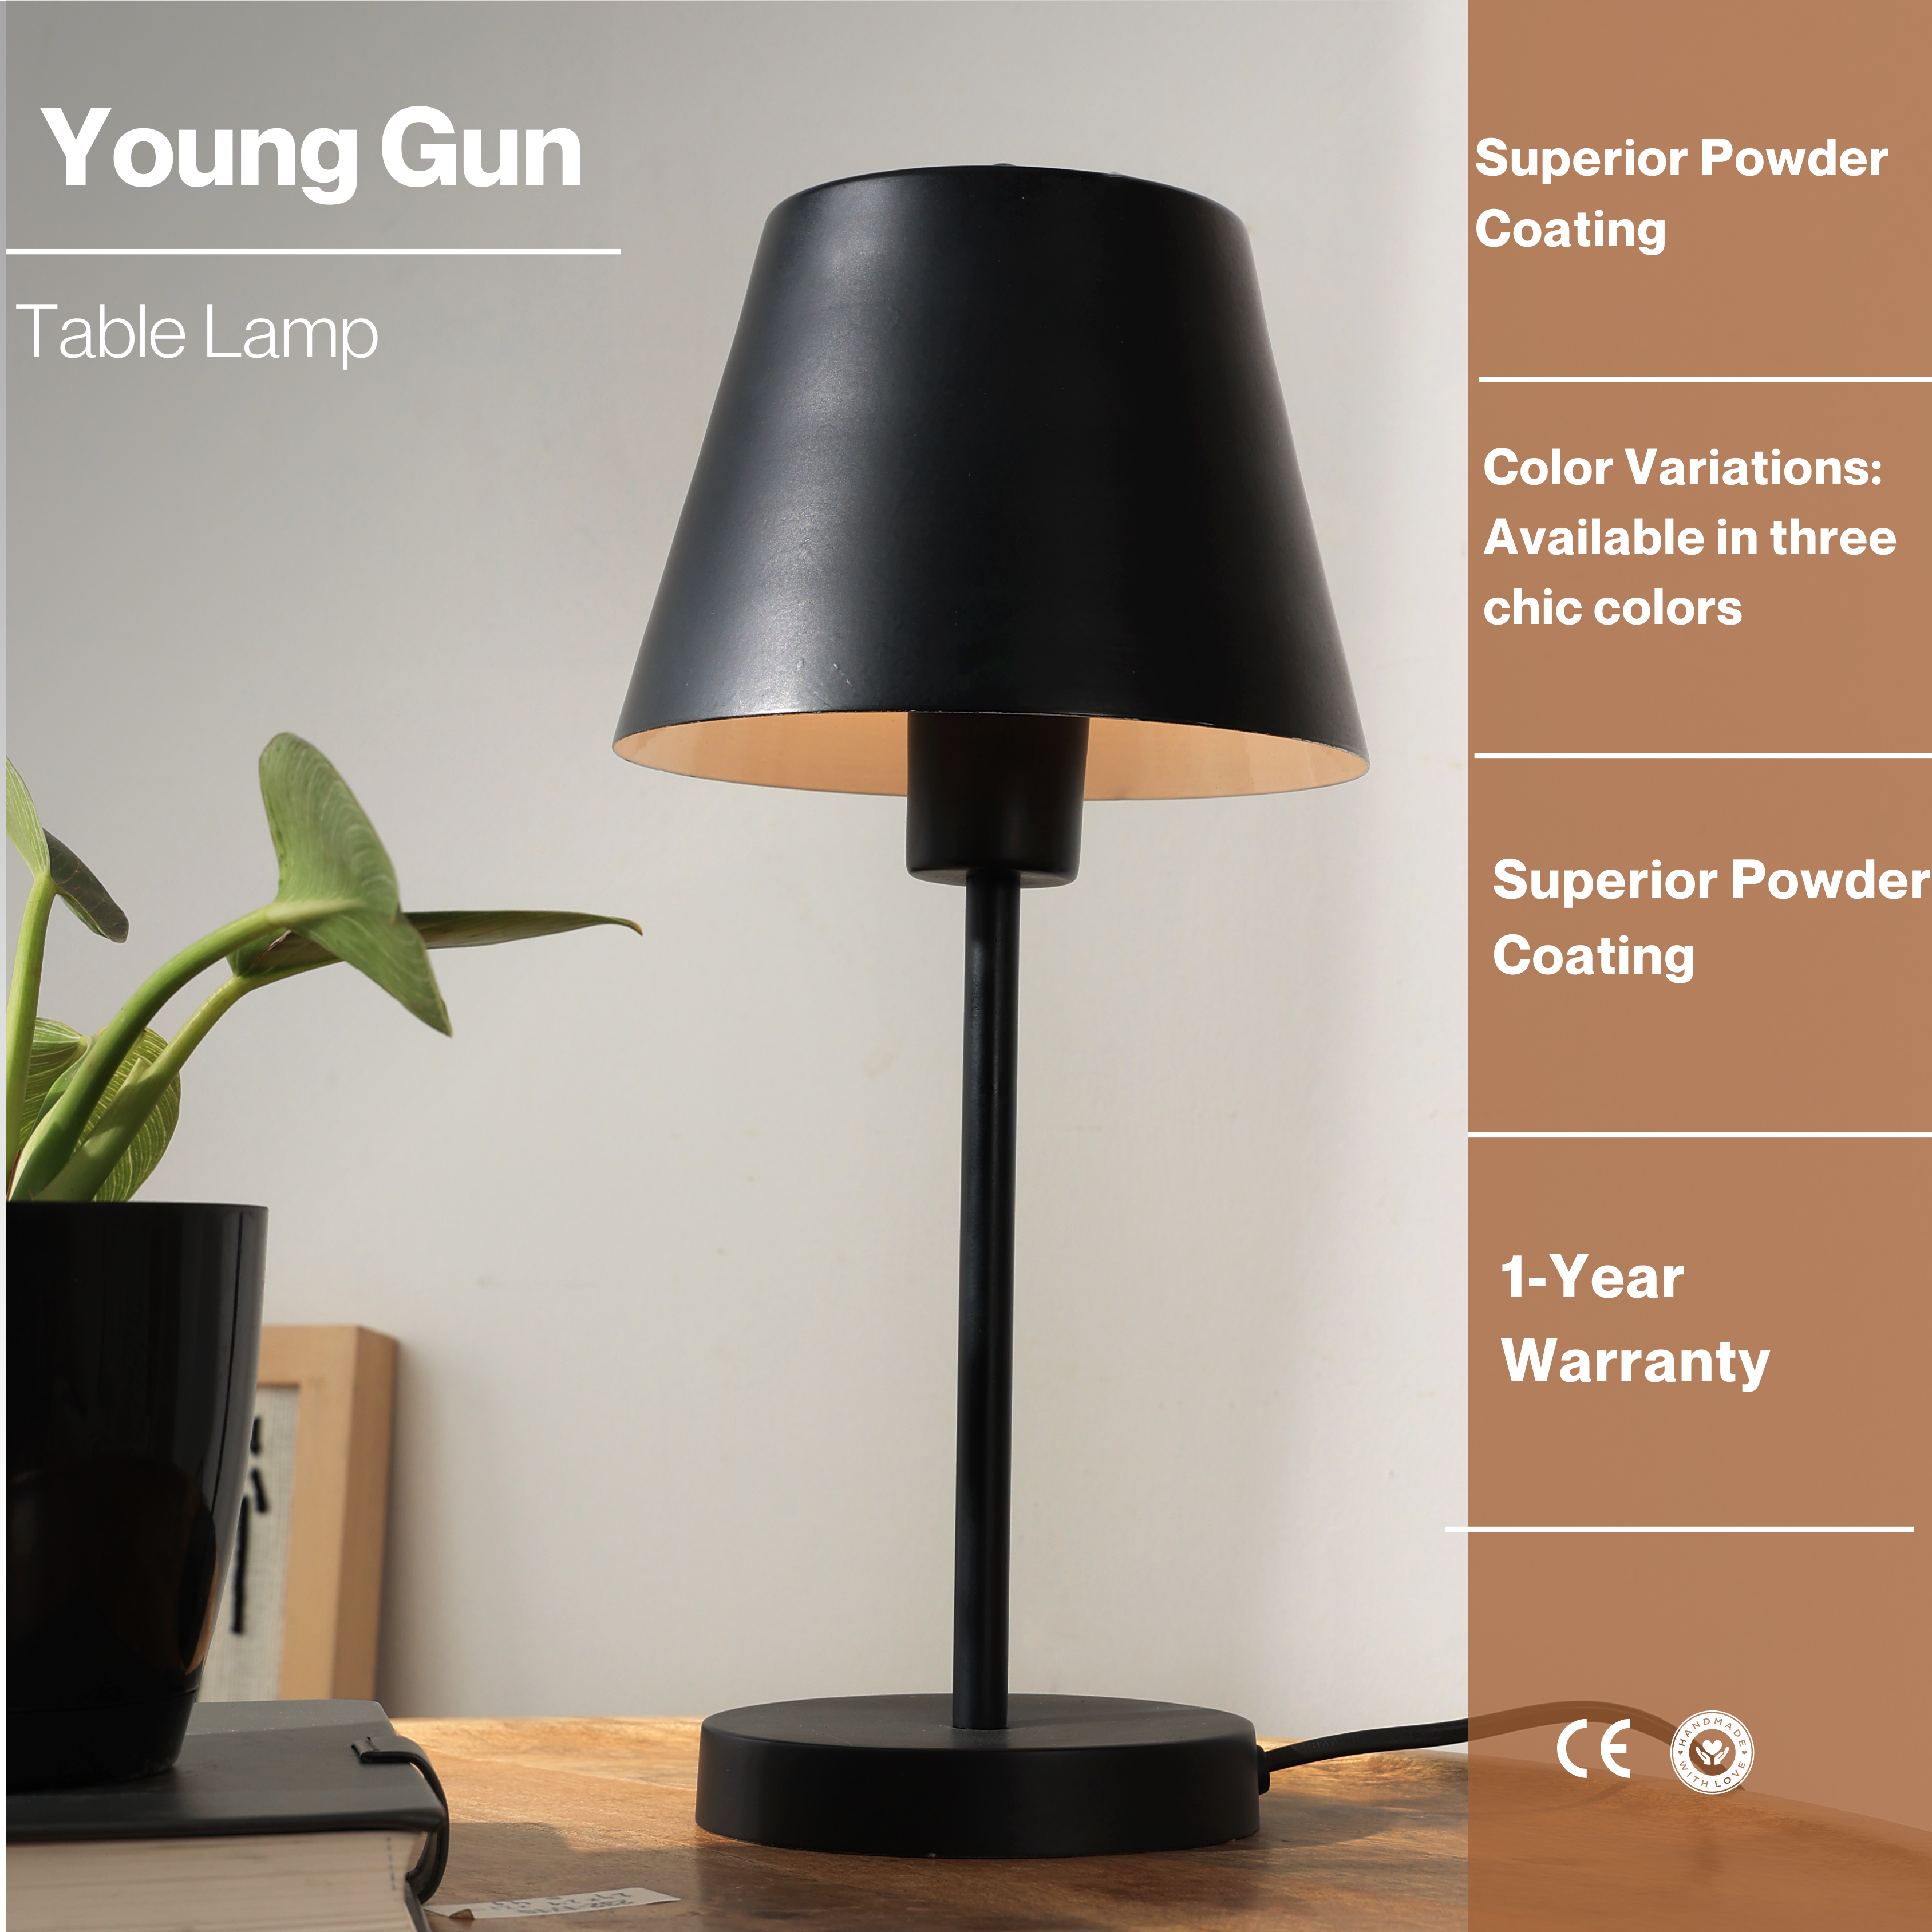 Young Gun Table Lamp